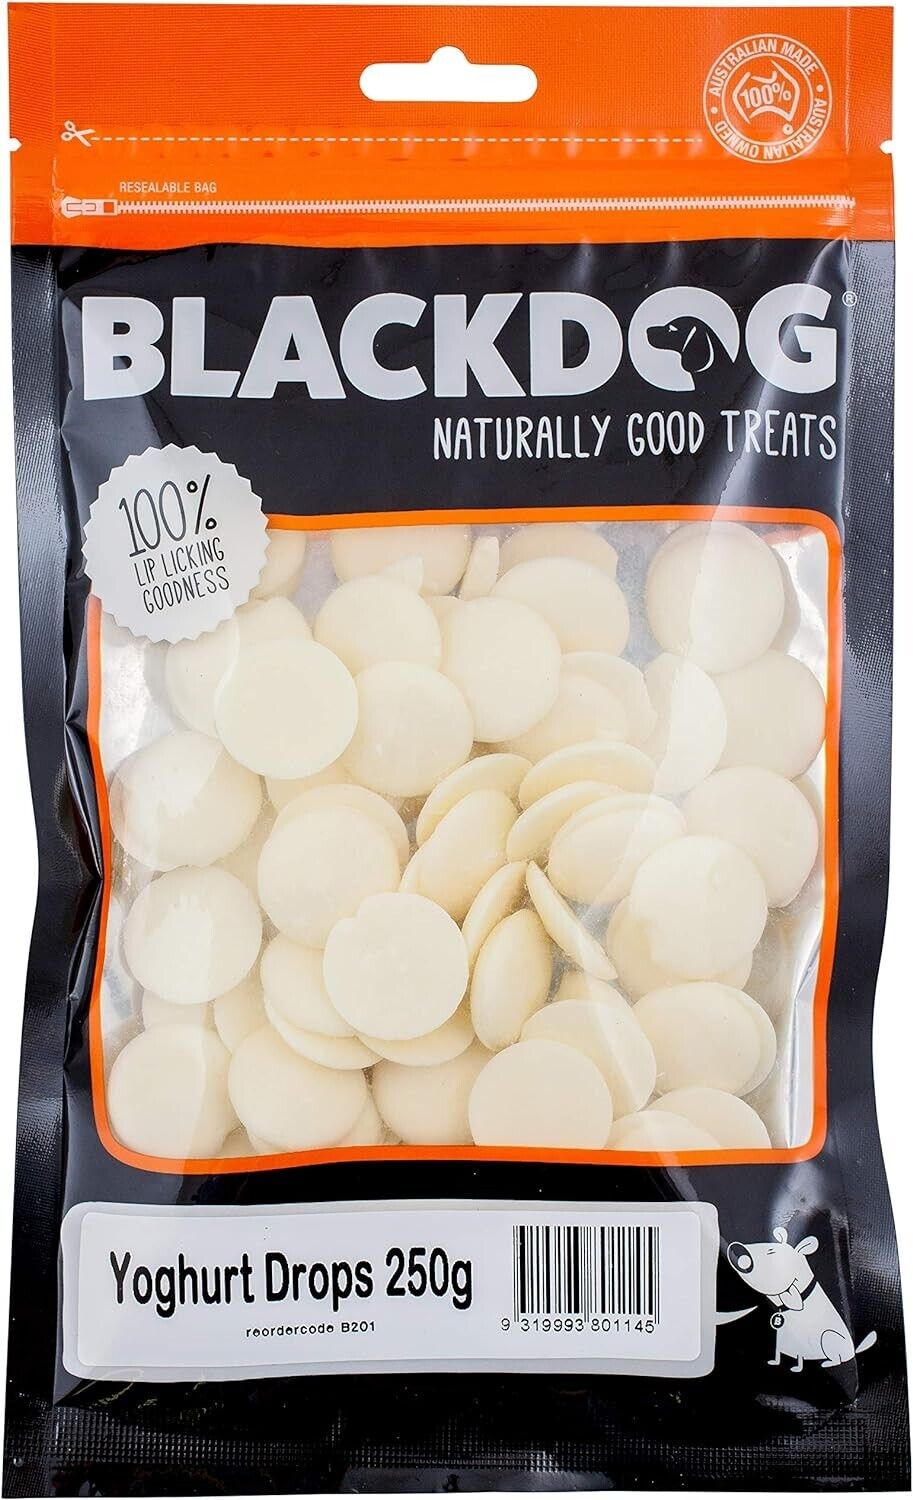 Blackdog Yougurt Drops 250g